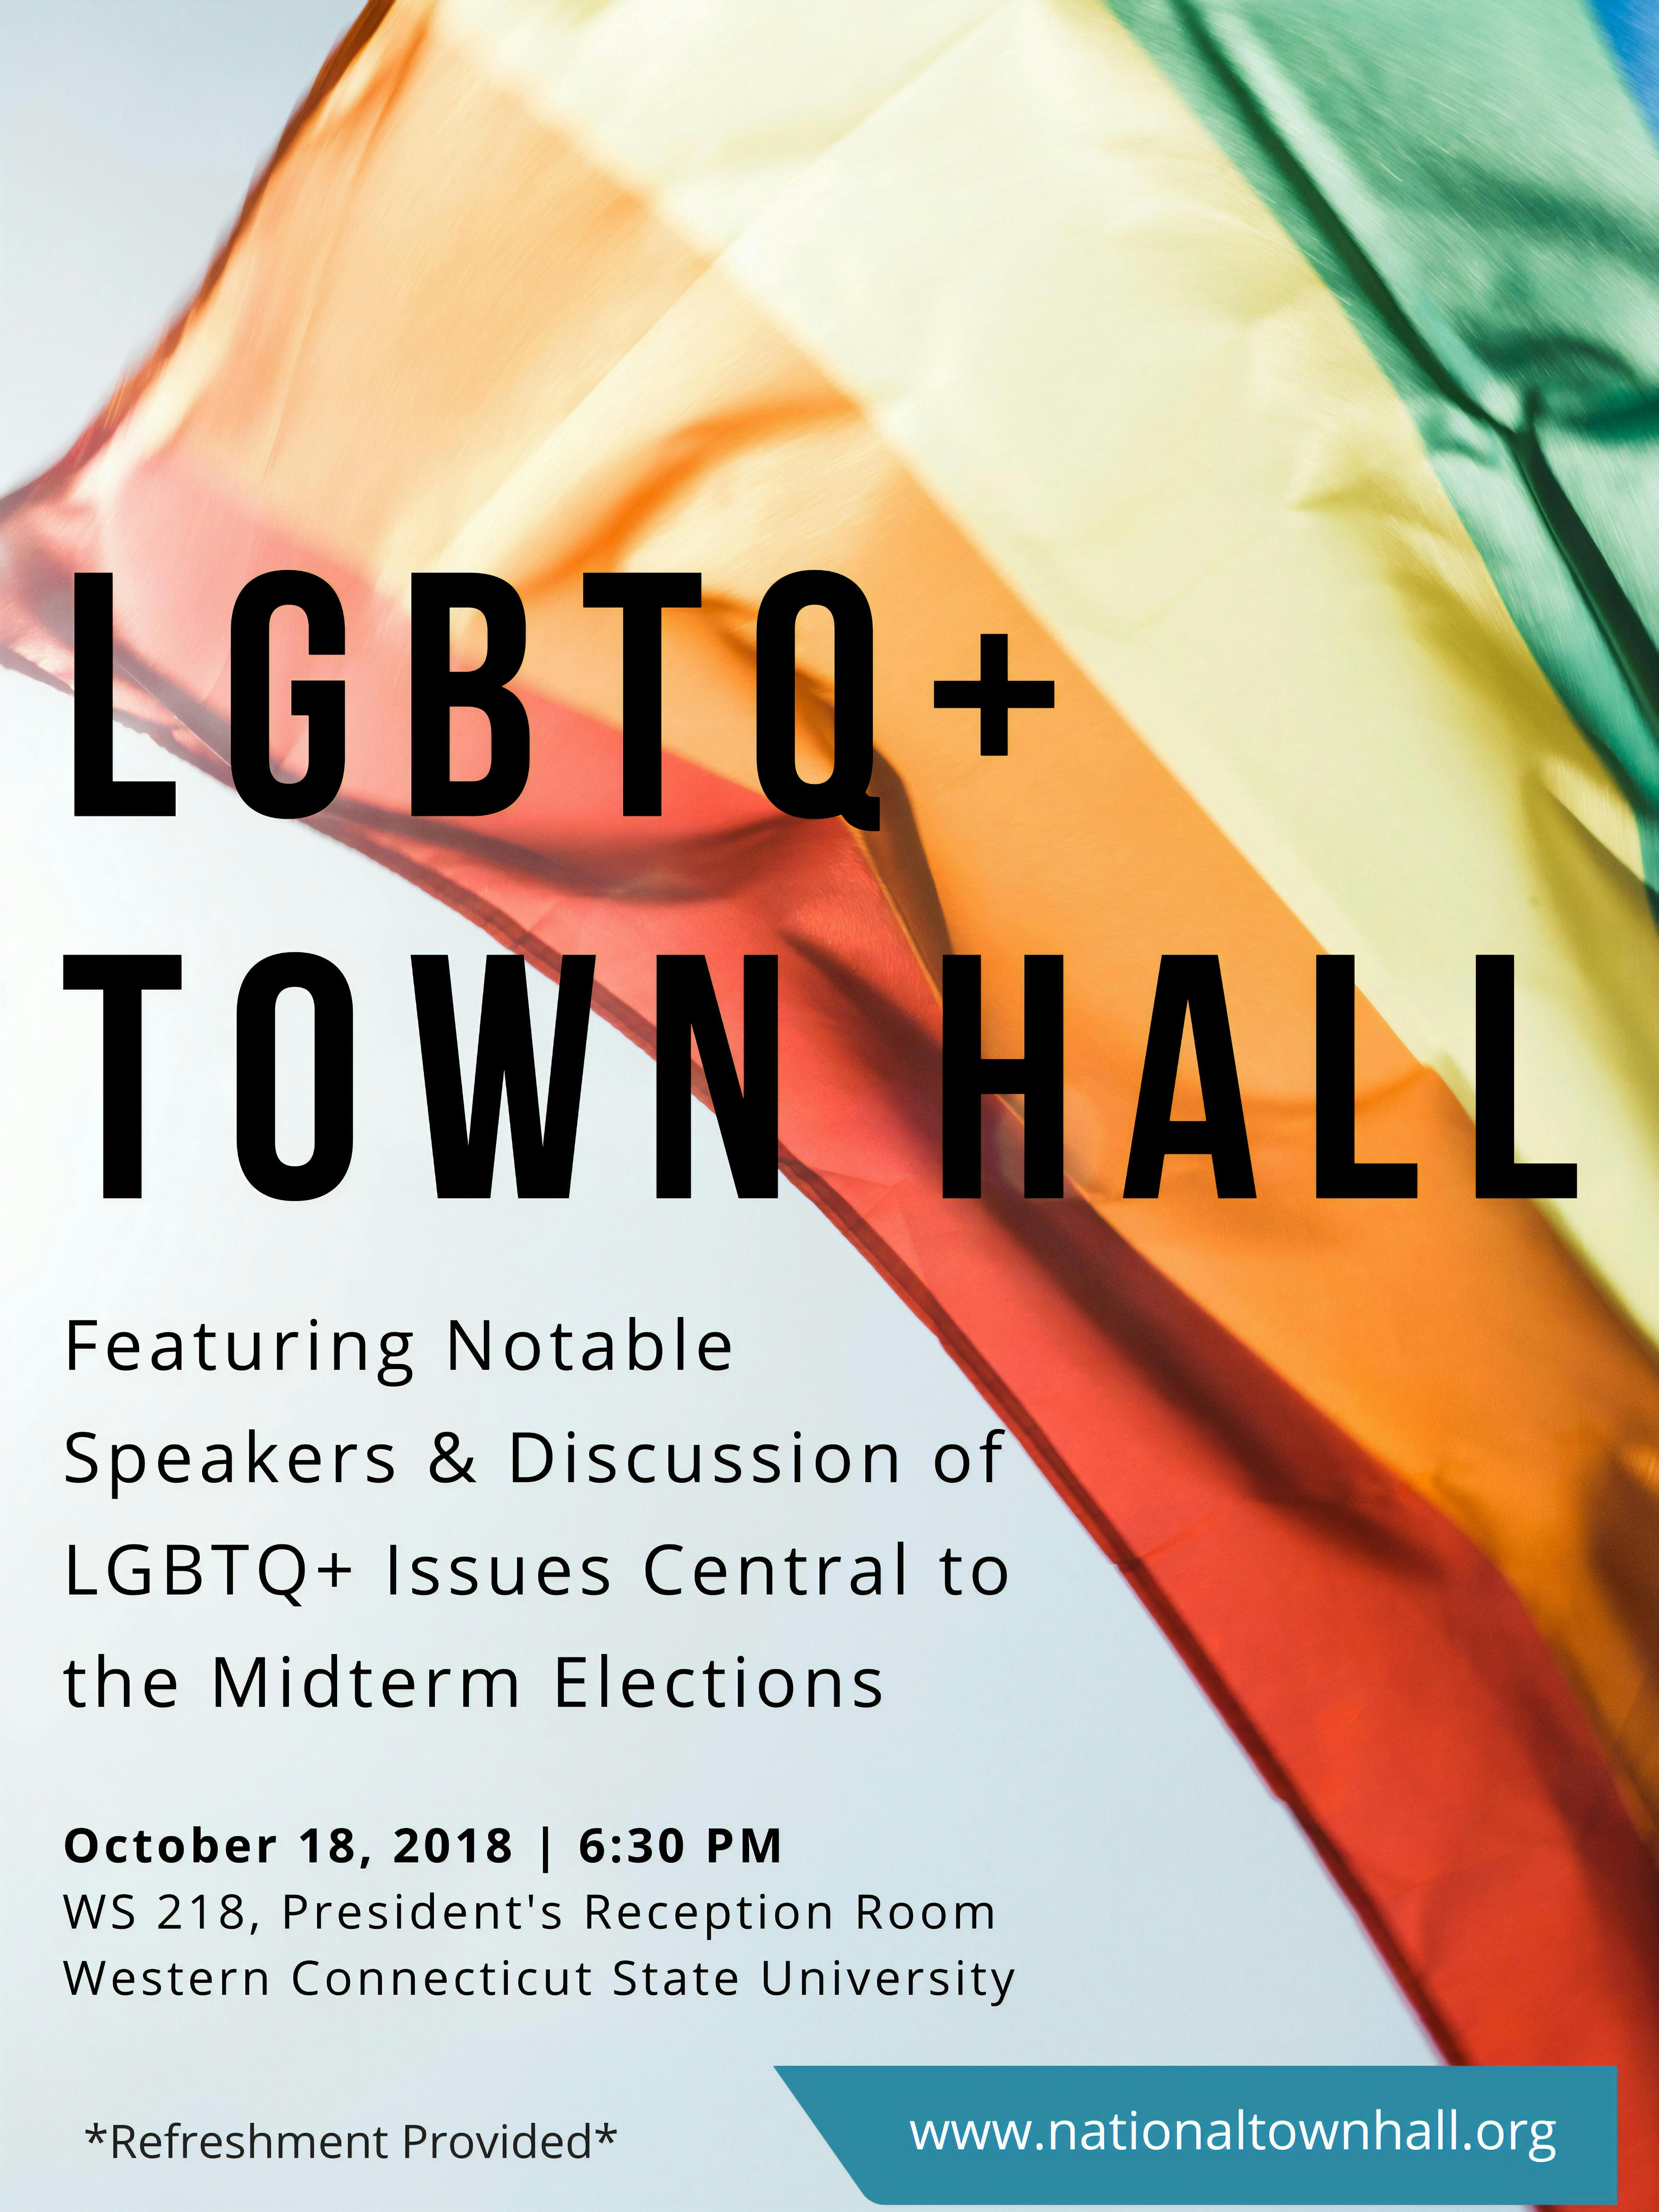 LGBTQ+ TOWN HALL